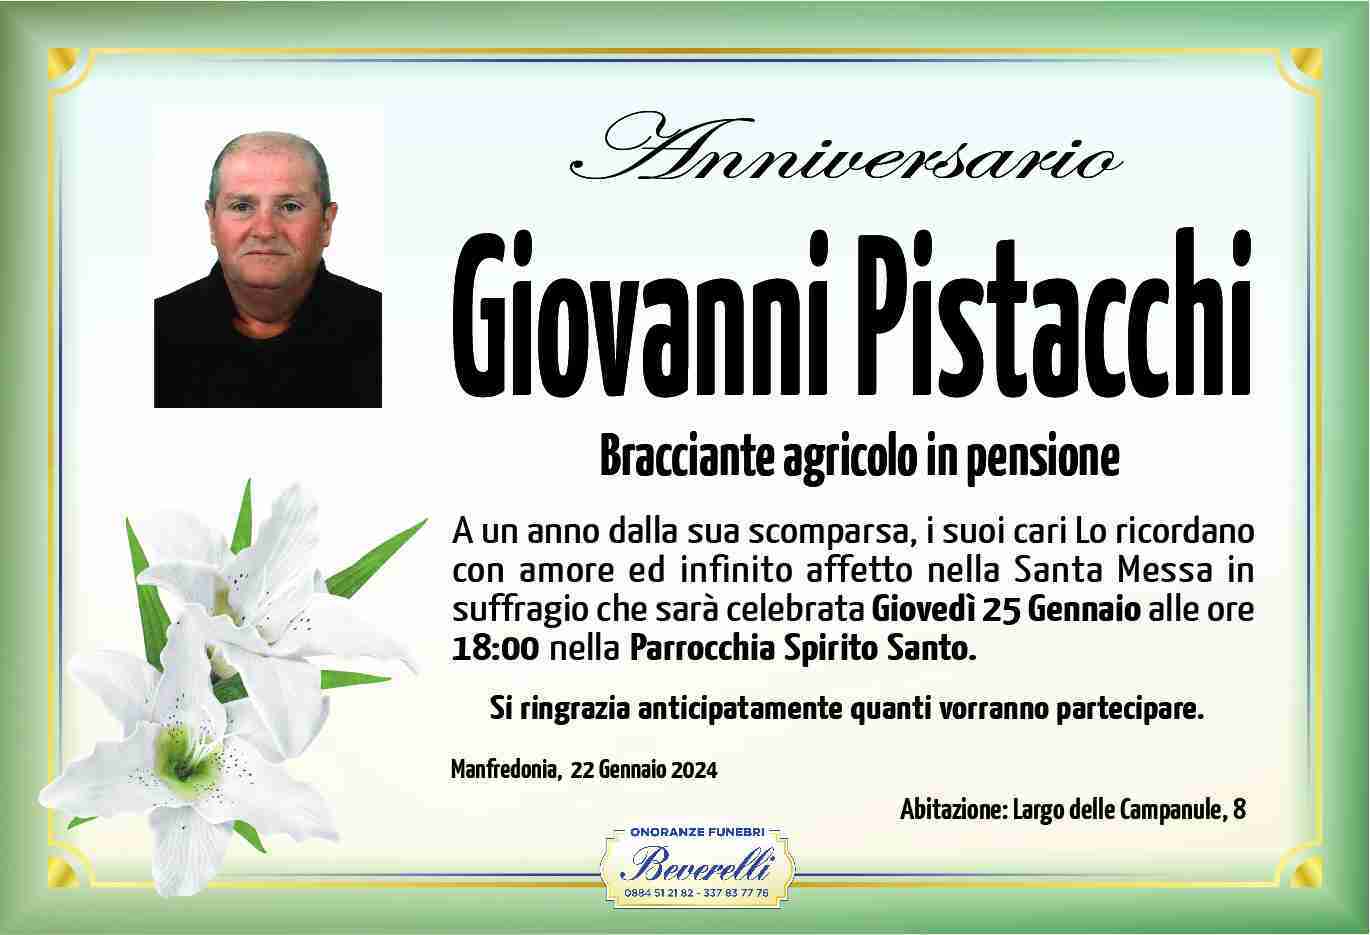 Giovanni Pistacchi